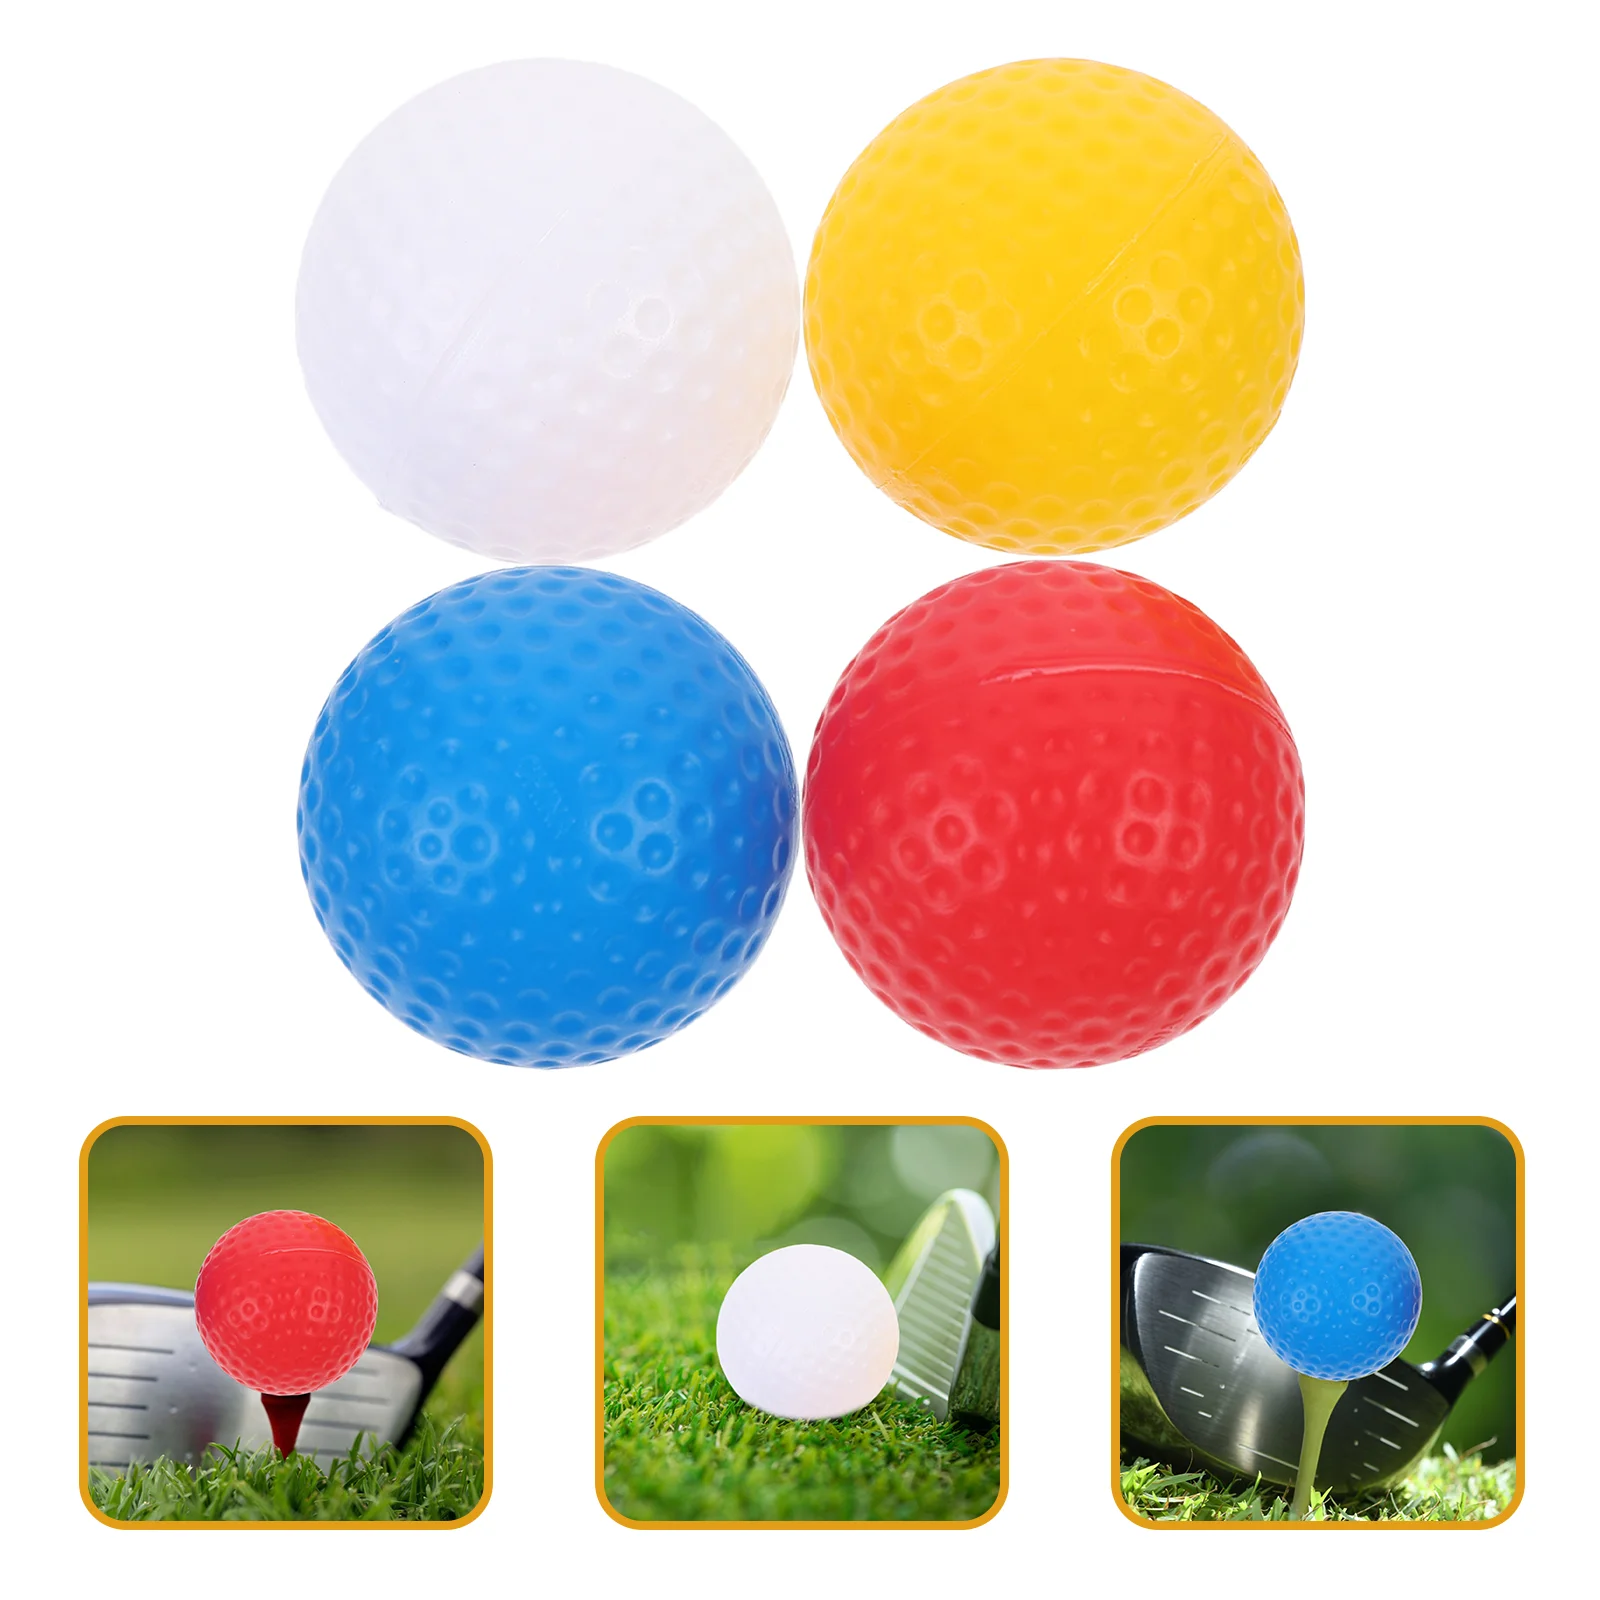 

16 шт. мячи для тренировок по гольфу Цветные мячи для гольфа маленькие мячи для гольфа портативные мячи для игры в гольф